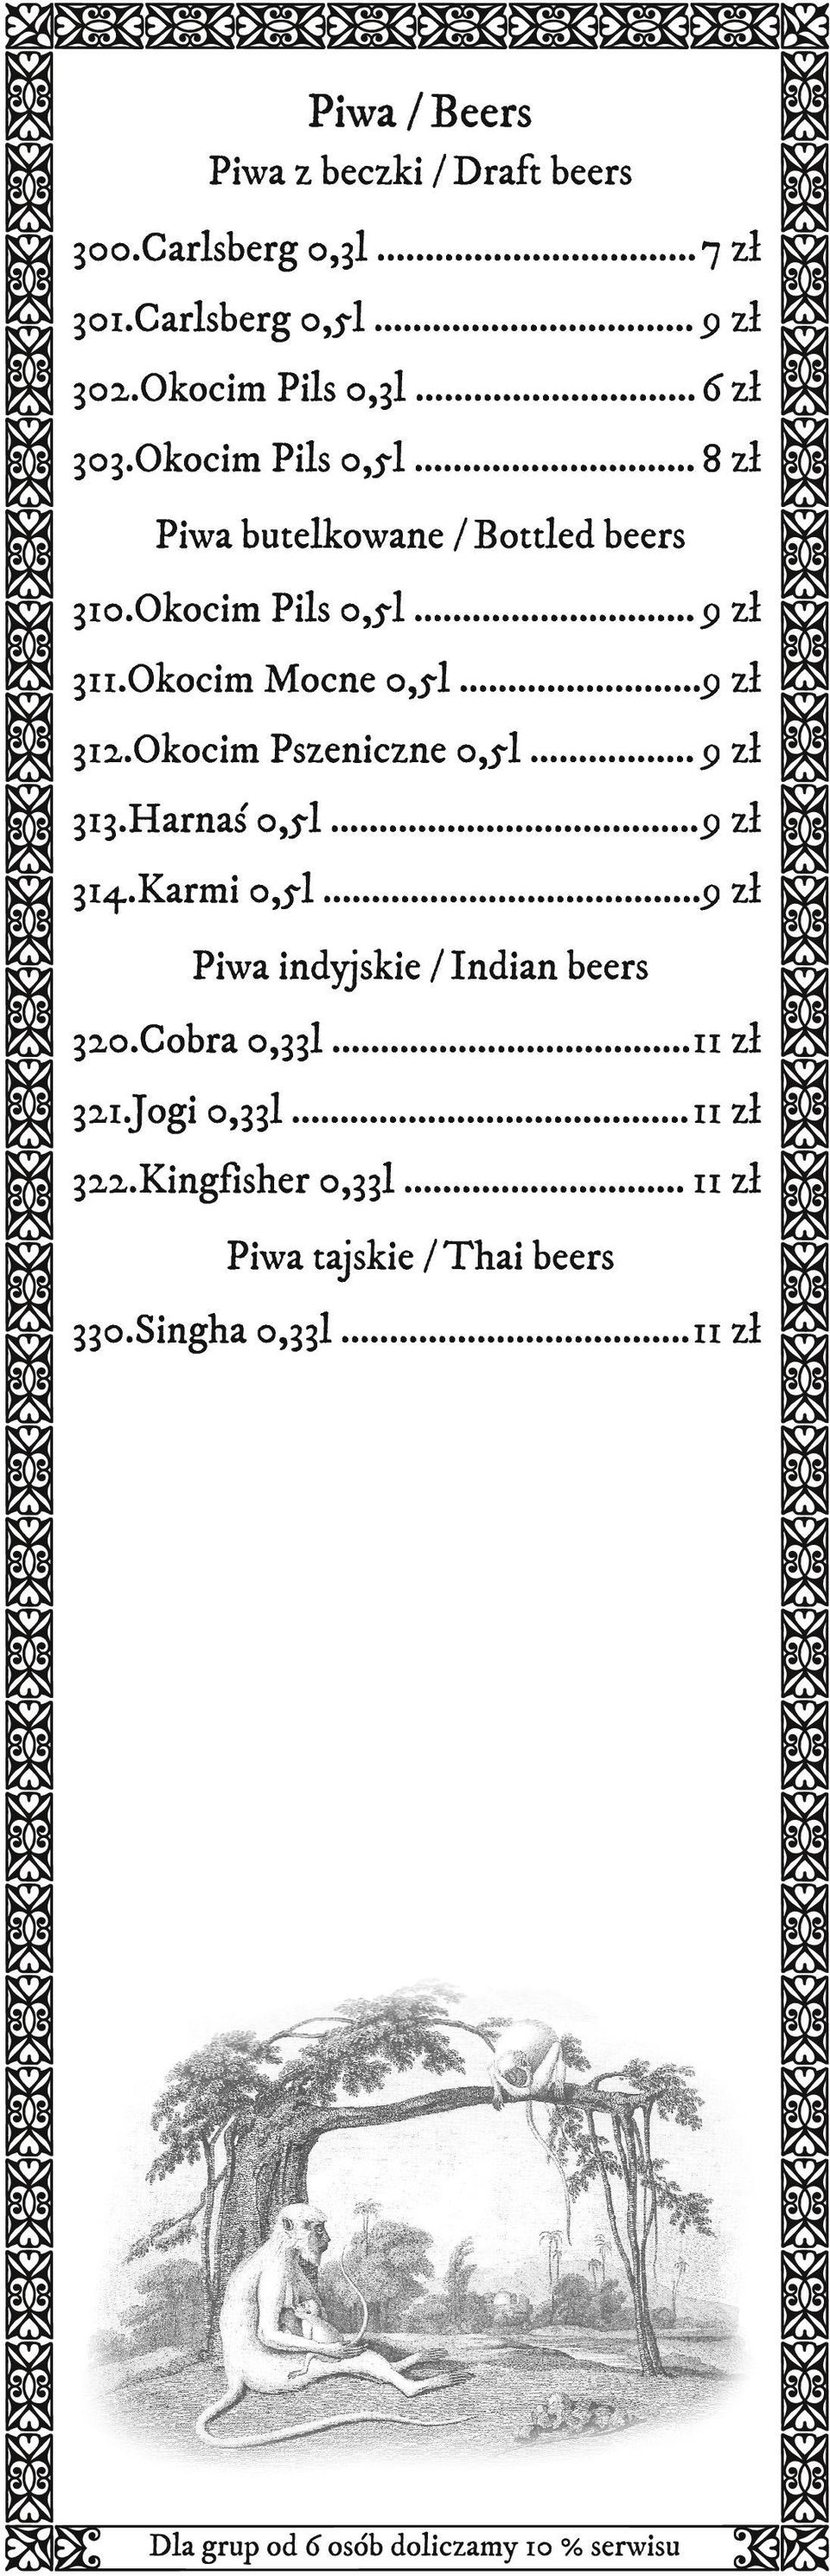 Okocim Pszeniczne 0,5l... 9 zł 313.Harnaś 0,5l...9 zł 314.Karmi 0,5l...9 zł Piwa indyjskie / Indian beers 320.Cobra 0,33l.